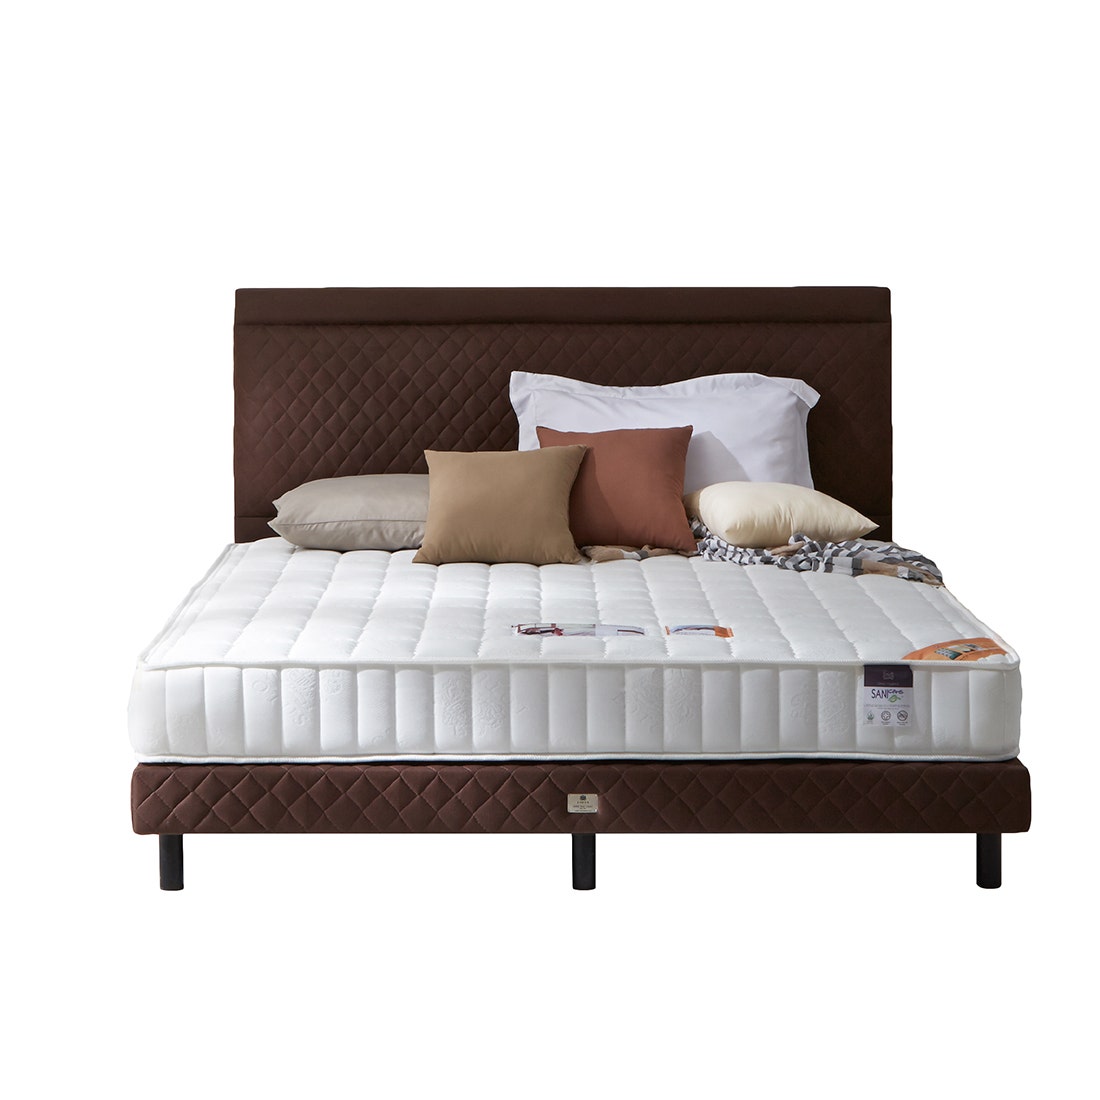 39005121-mattress-bedding-mattresses-spring-mattresses-01